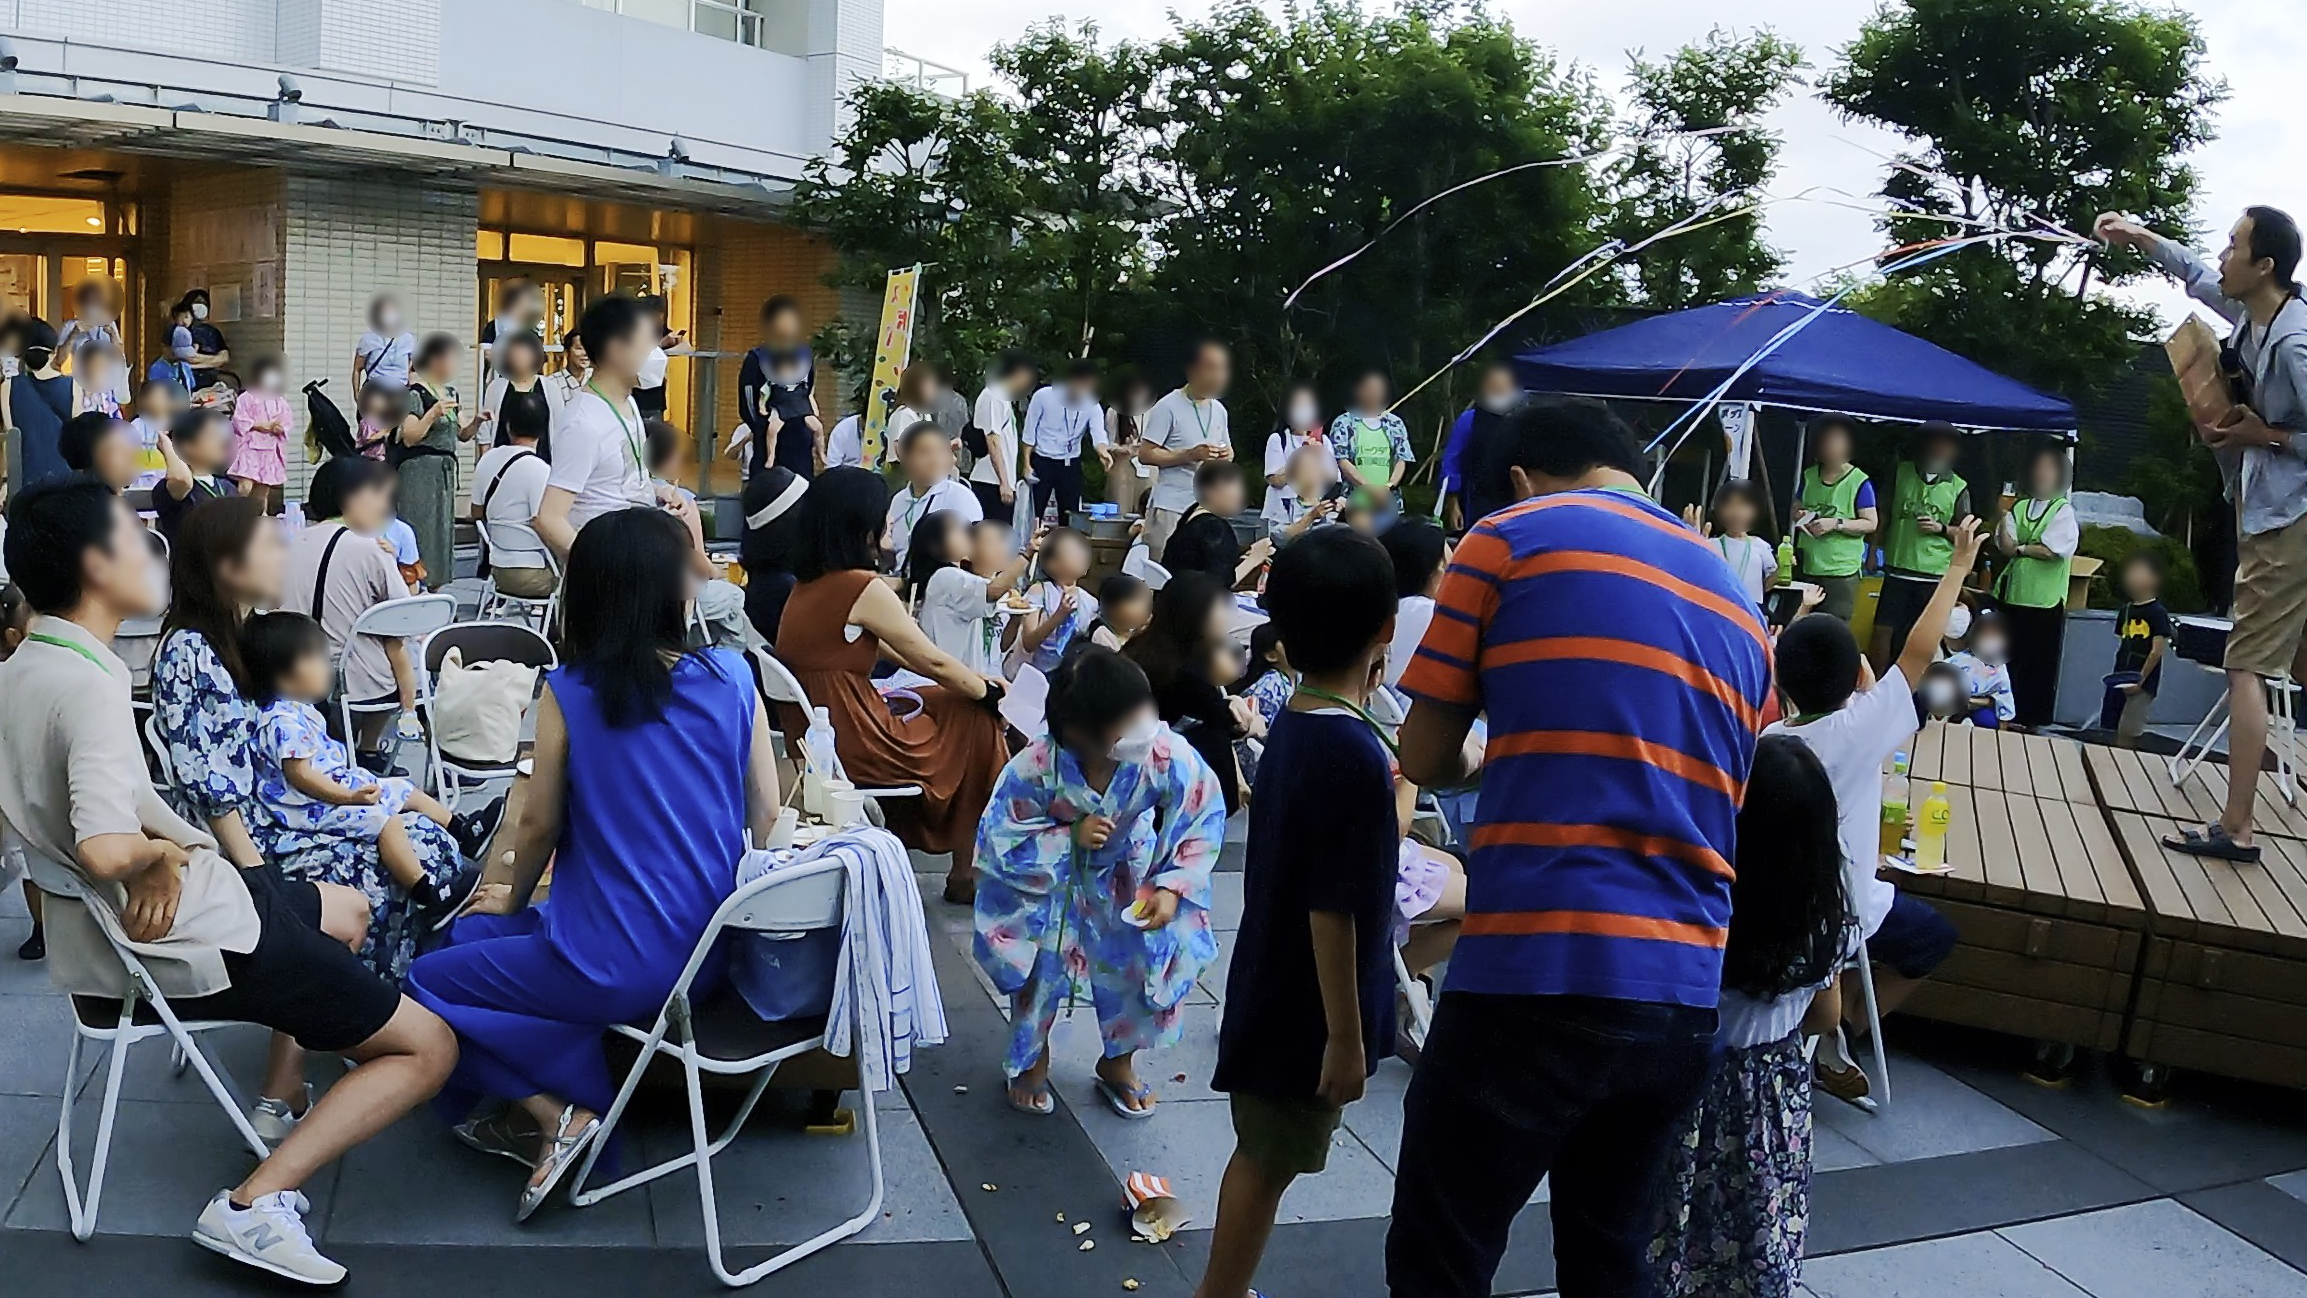 マンション夏祭りイベントでマジックショー 川崎市, 神奈川県